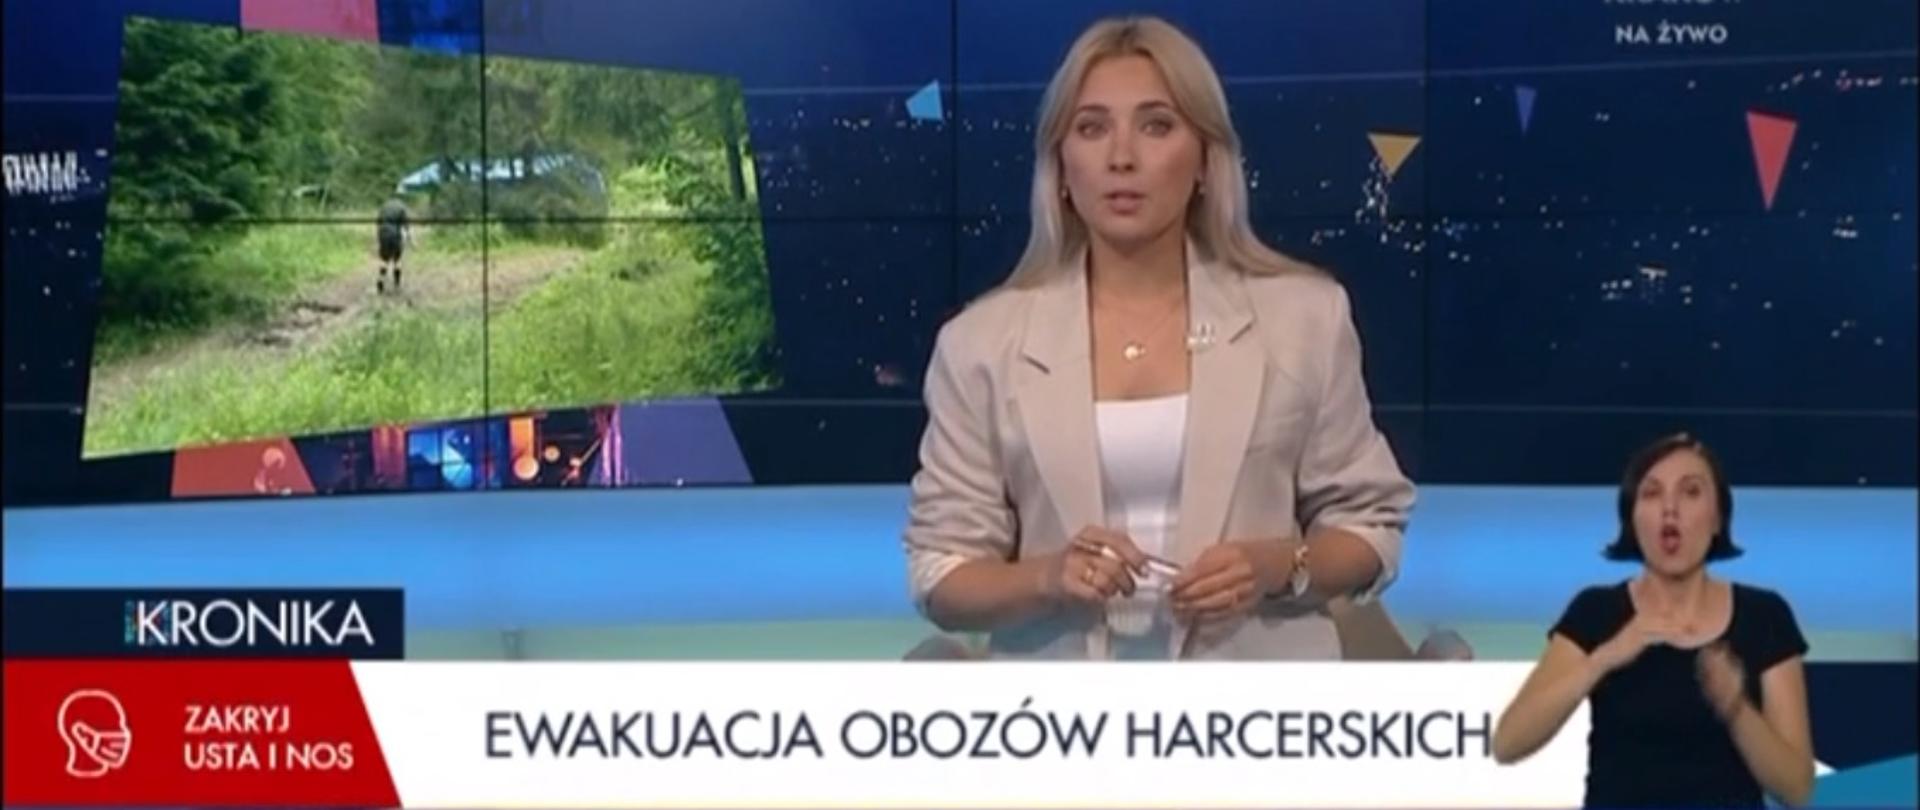 Prezenterka w TVP 3 Kraków zapowiada materiał o obozach harcerskich.